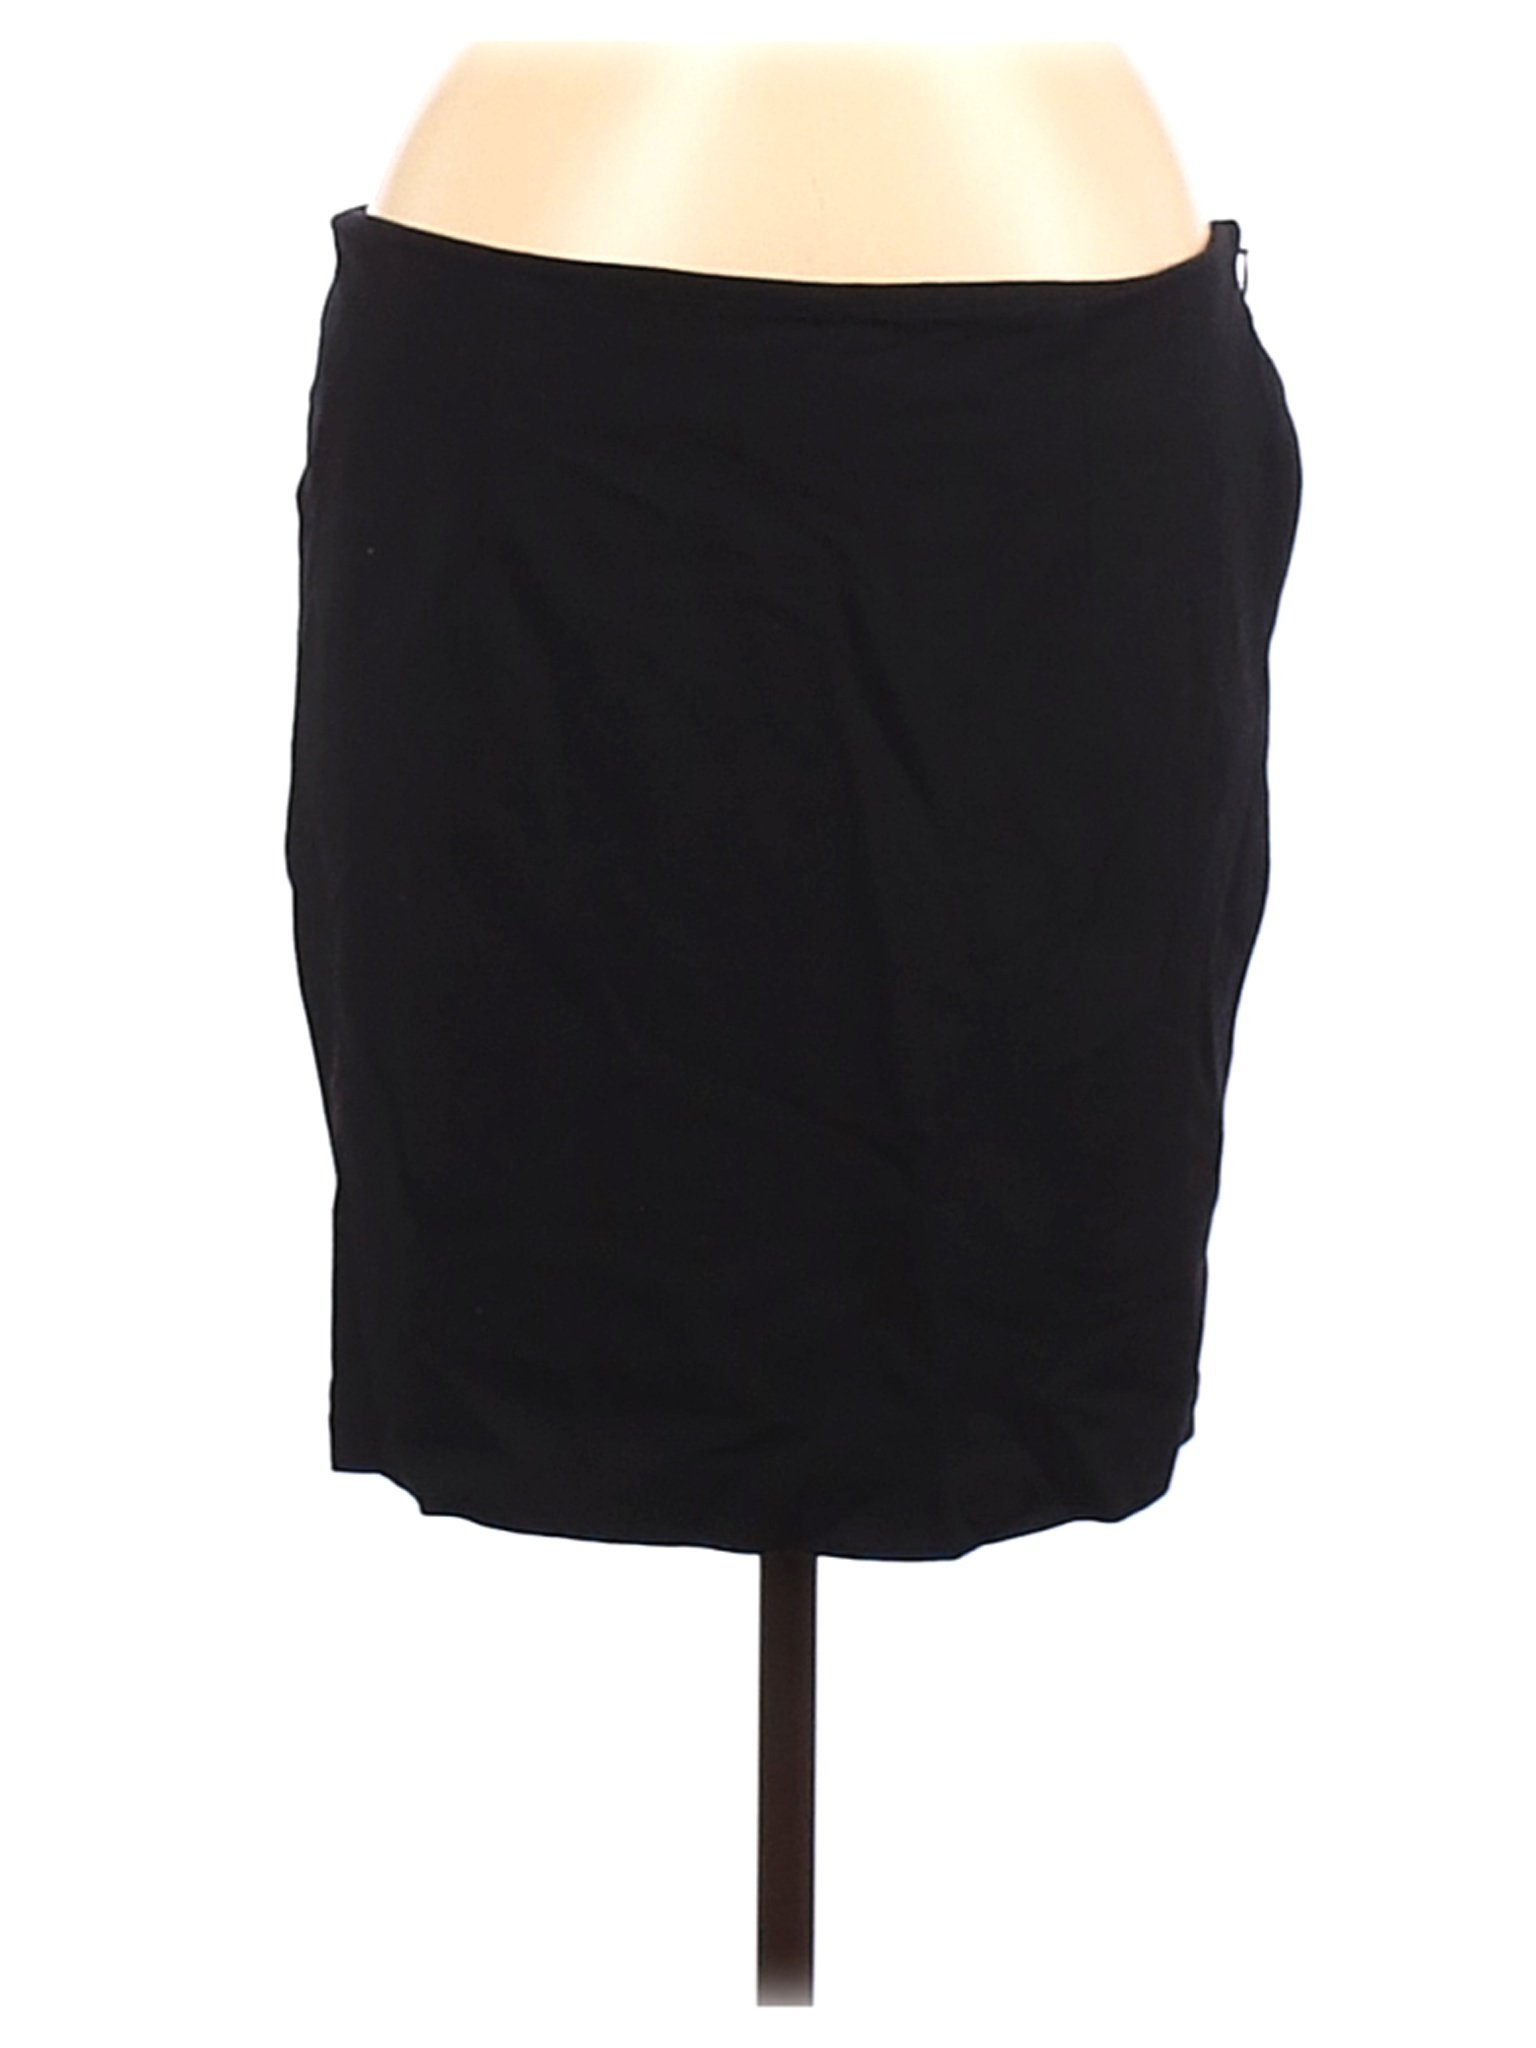 Chico's Women Black Casual Skirt M | eBay